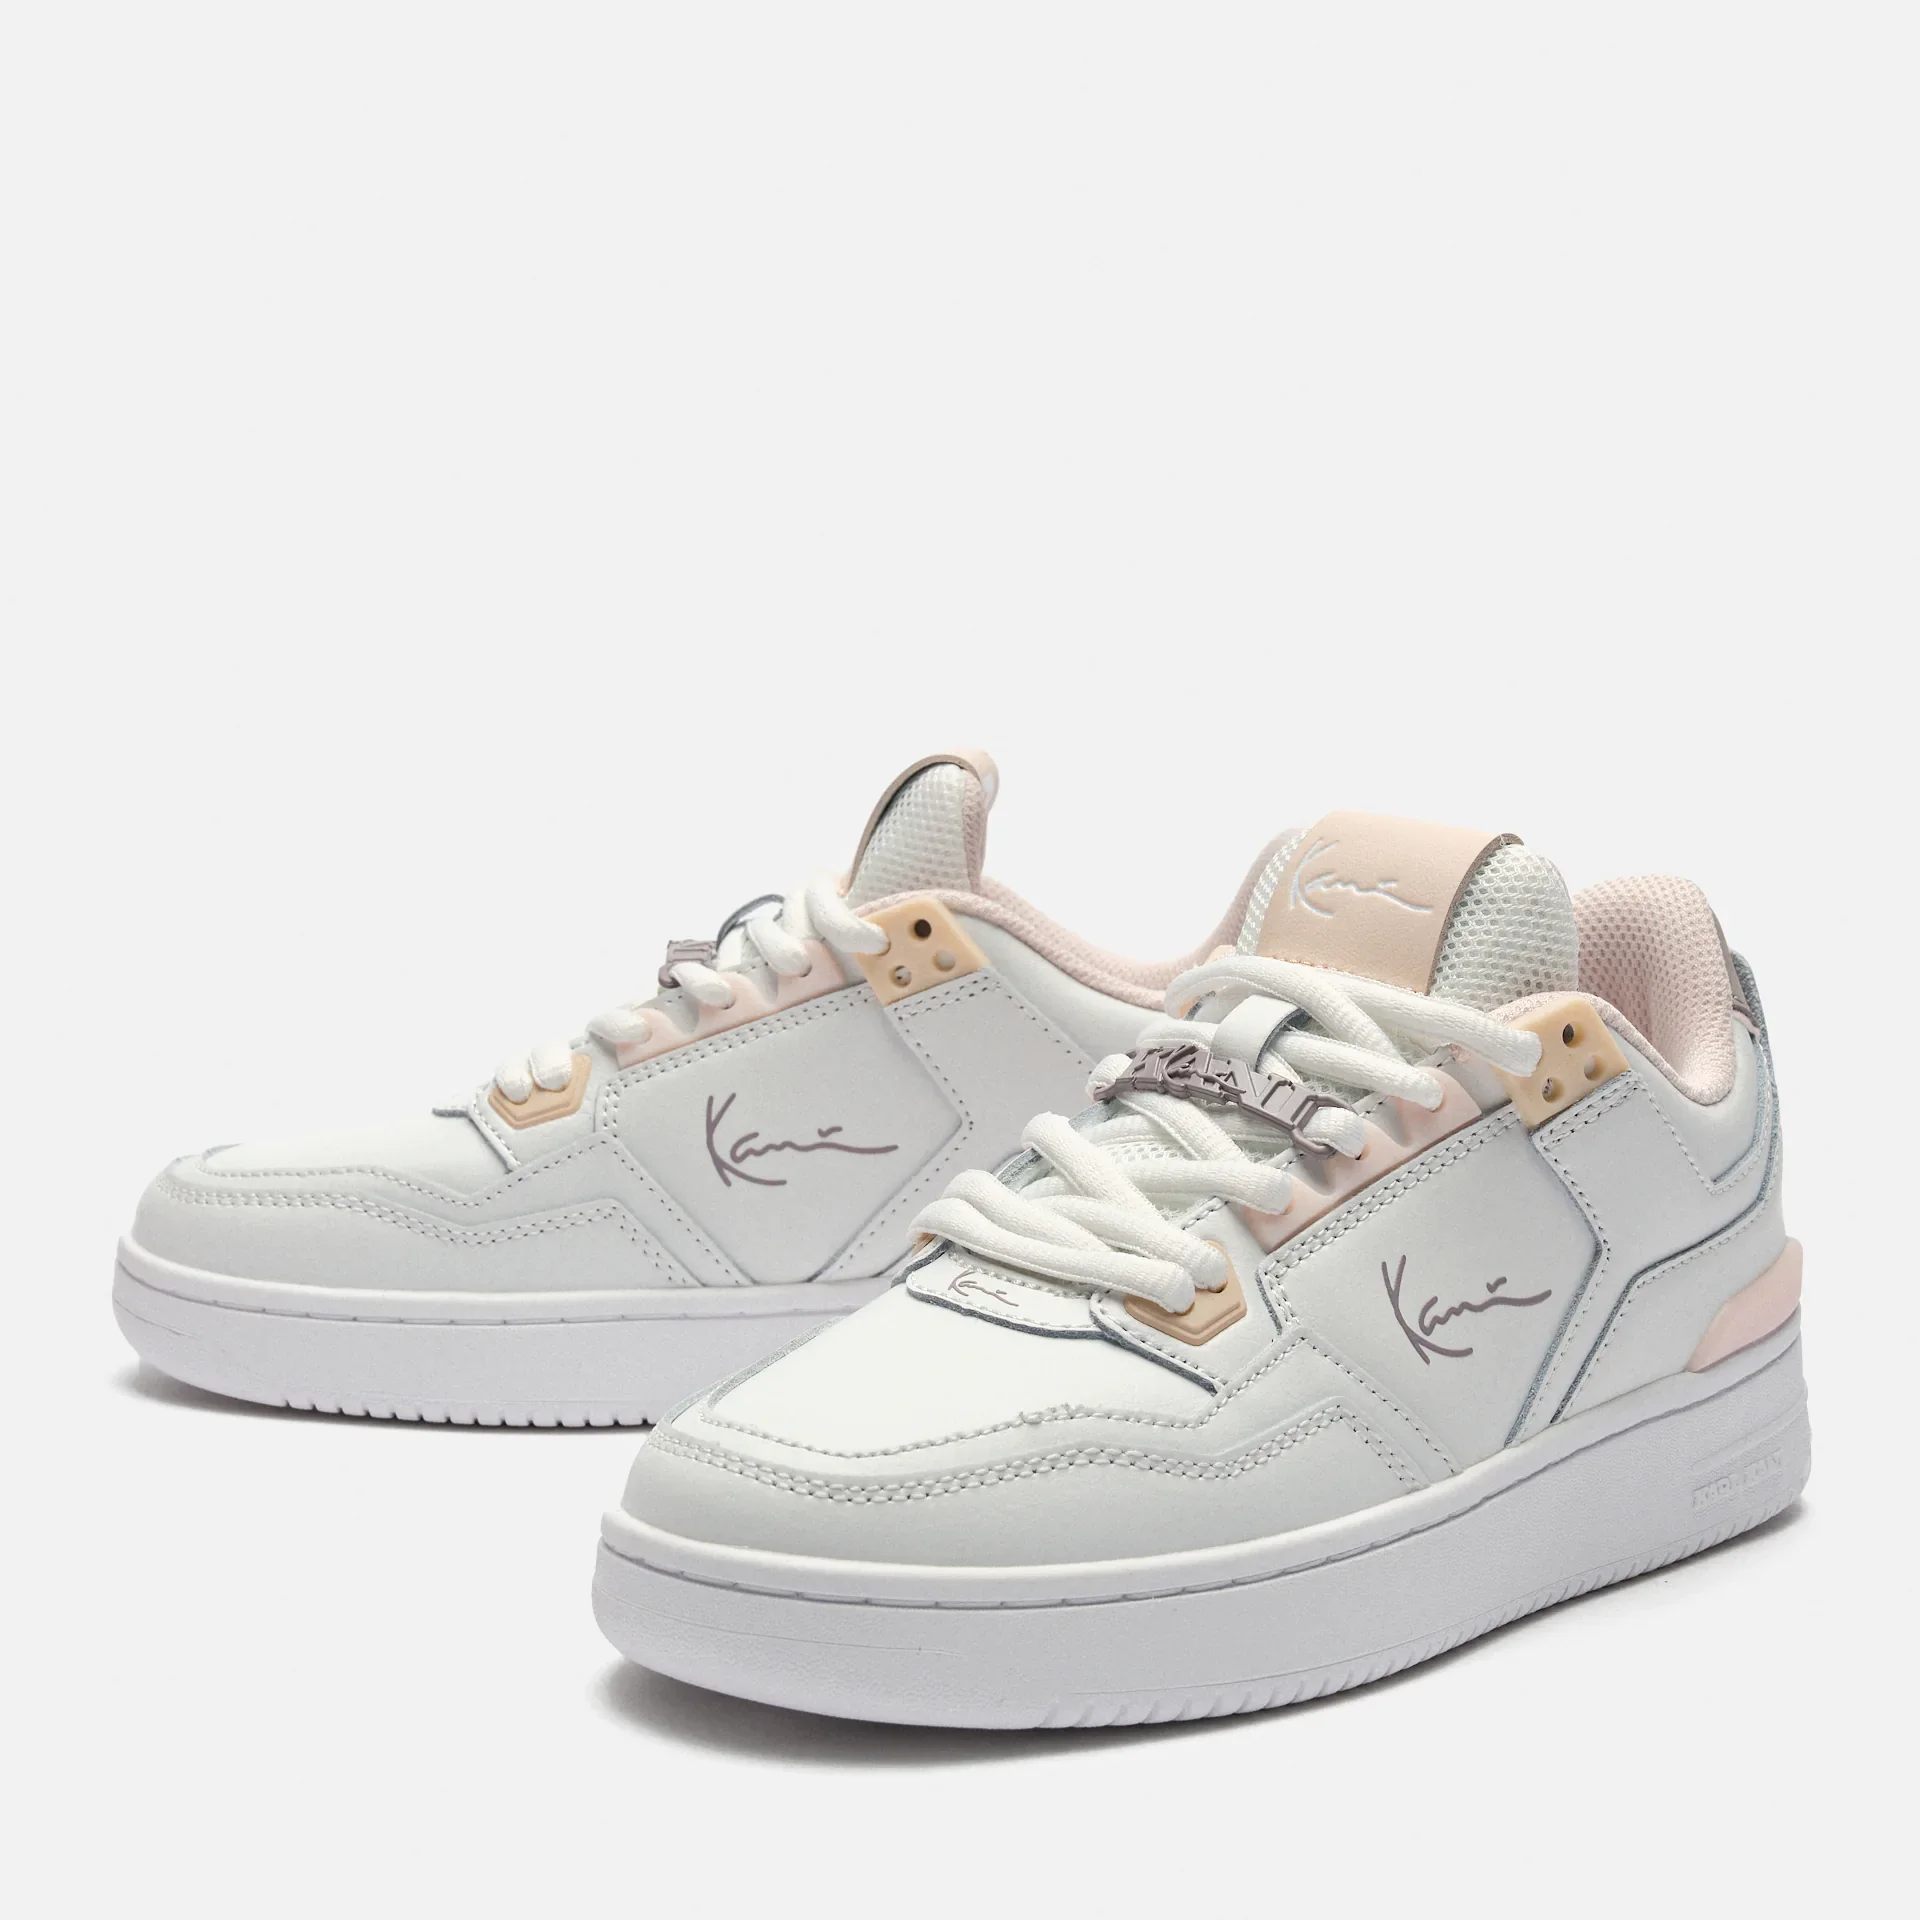 Karl Kani 89 Luxury Sneaker White/Pink/Lilac